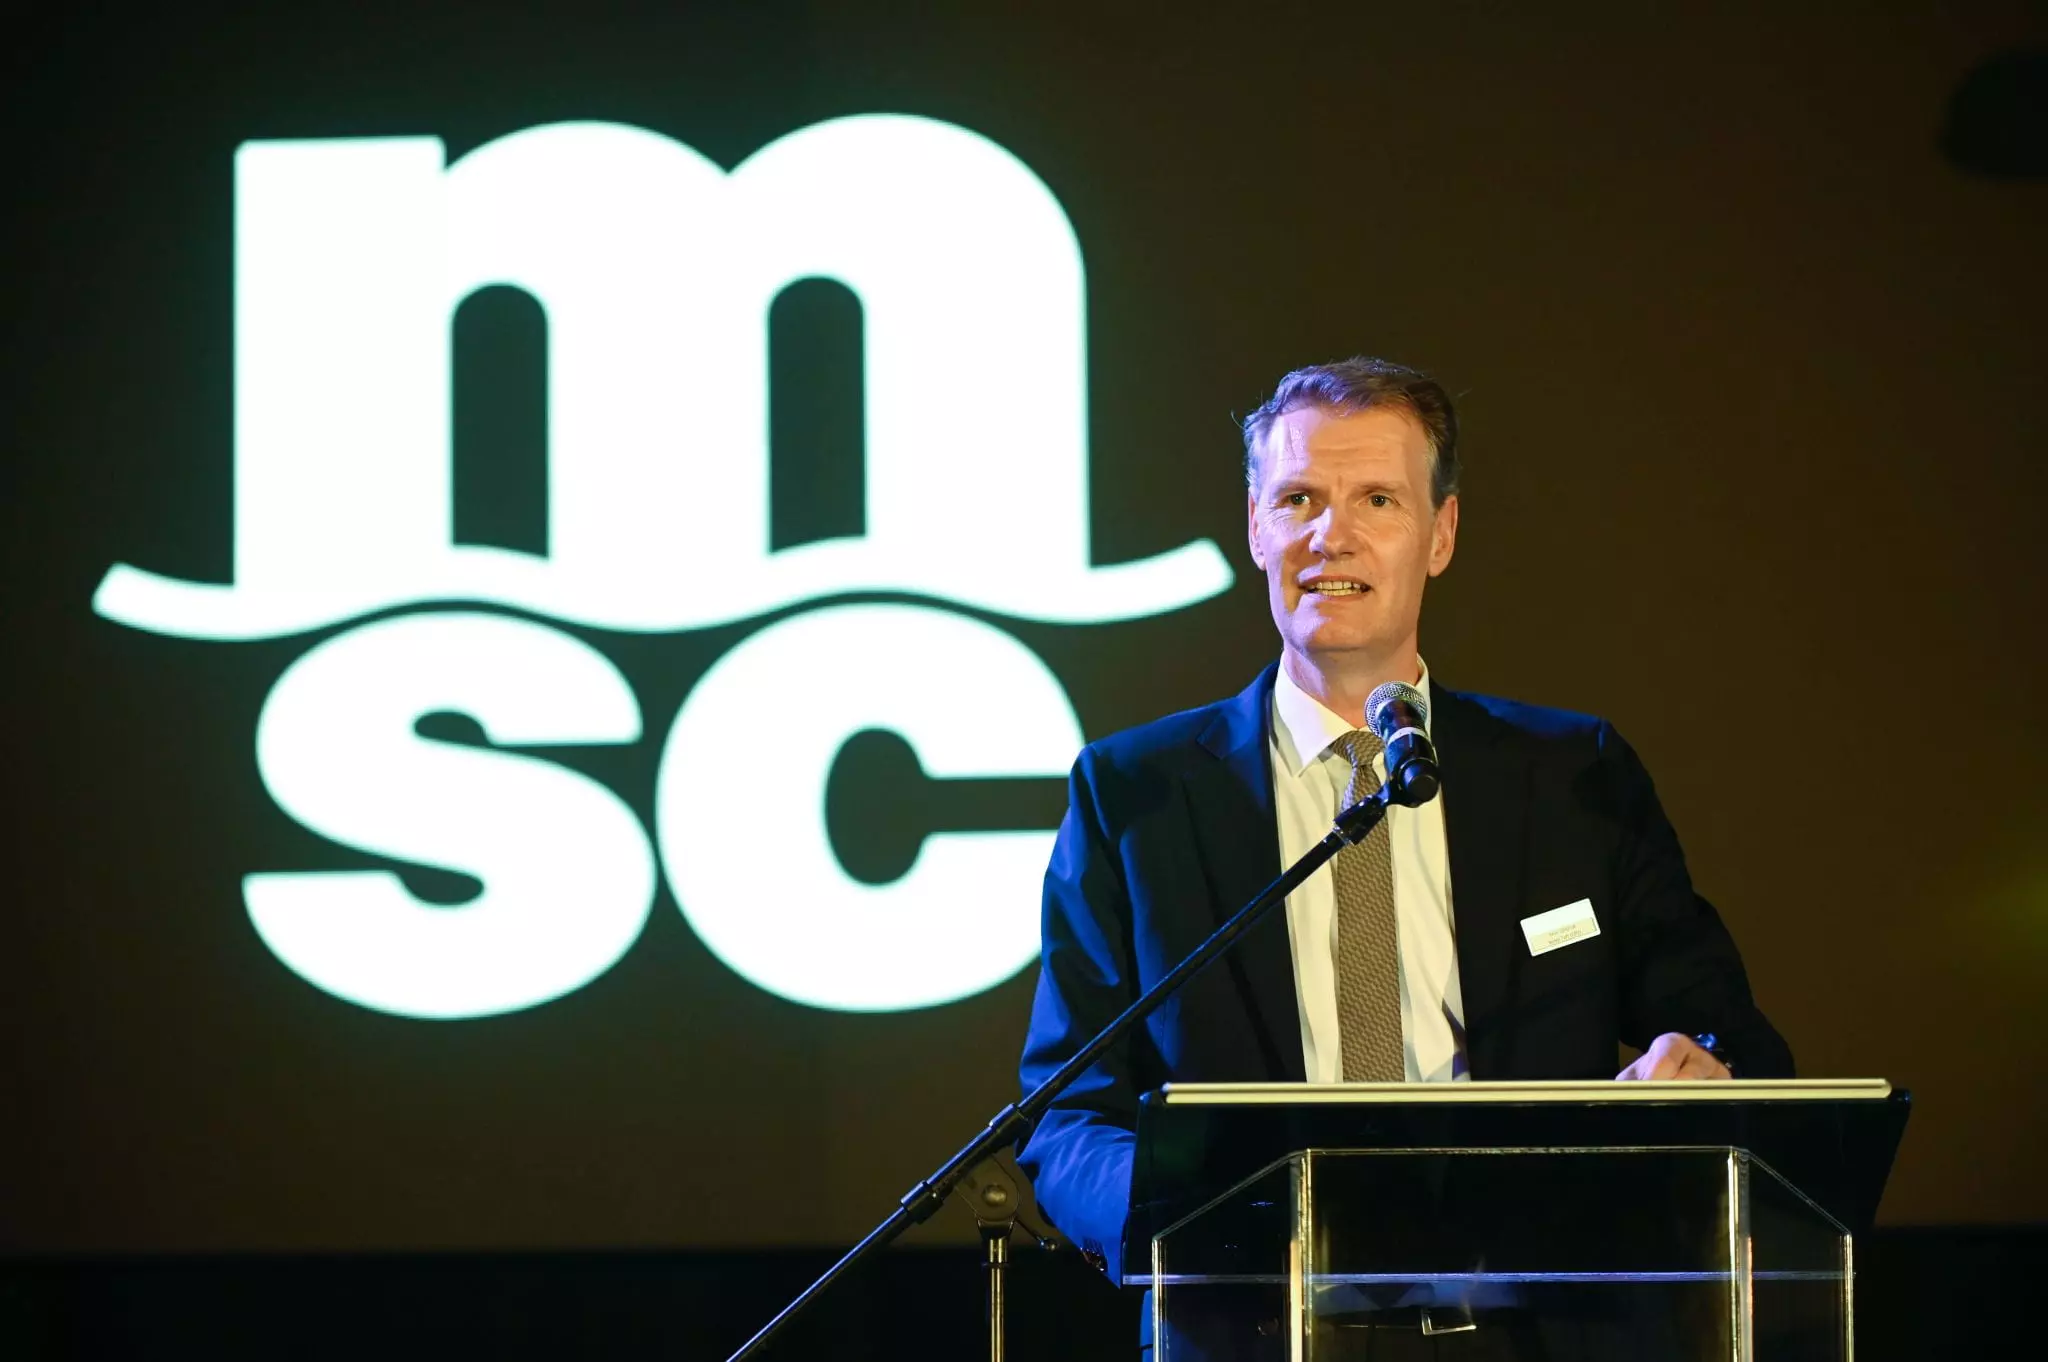 Soren Toft, CEO, MSC